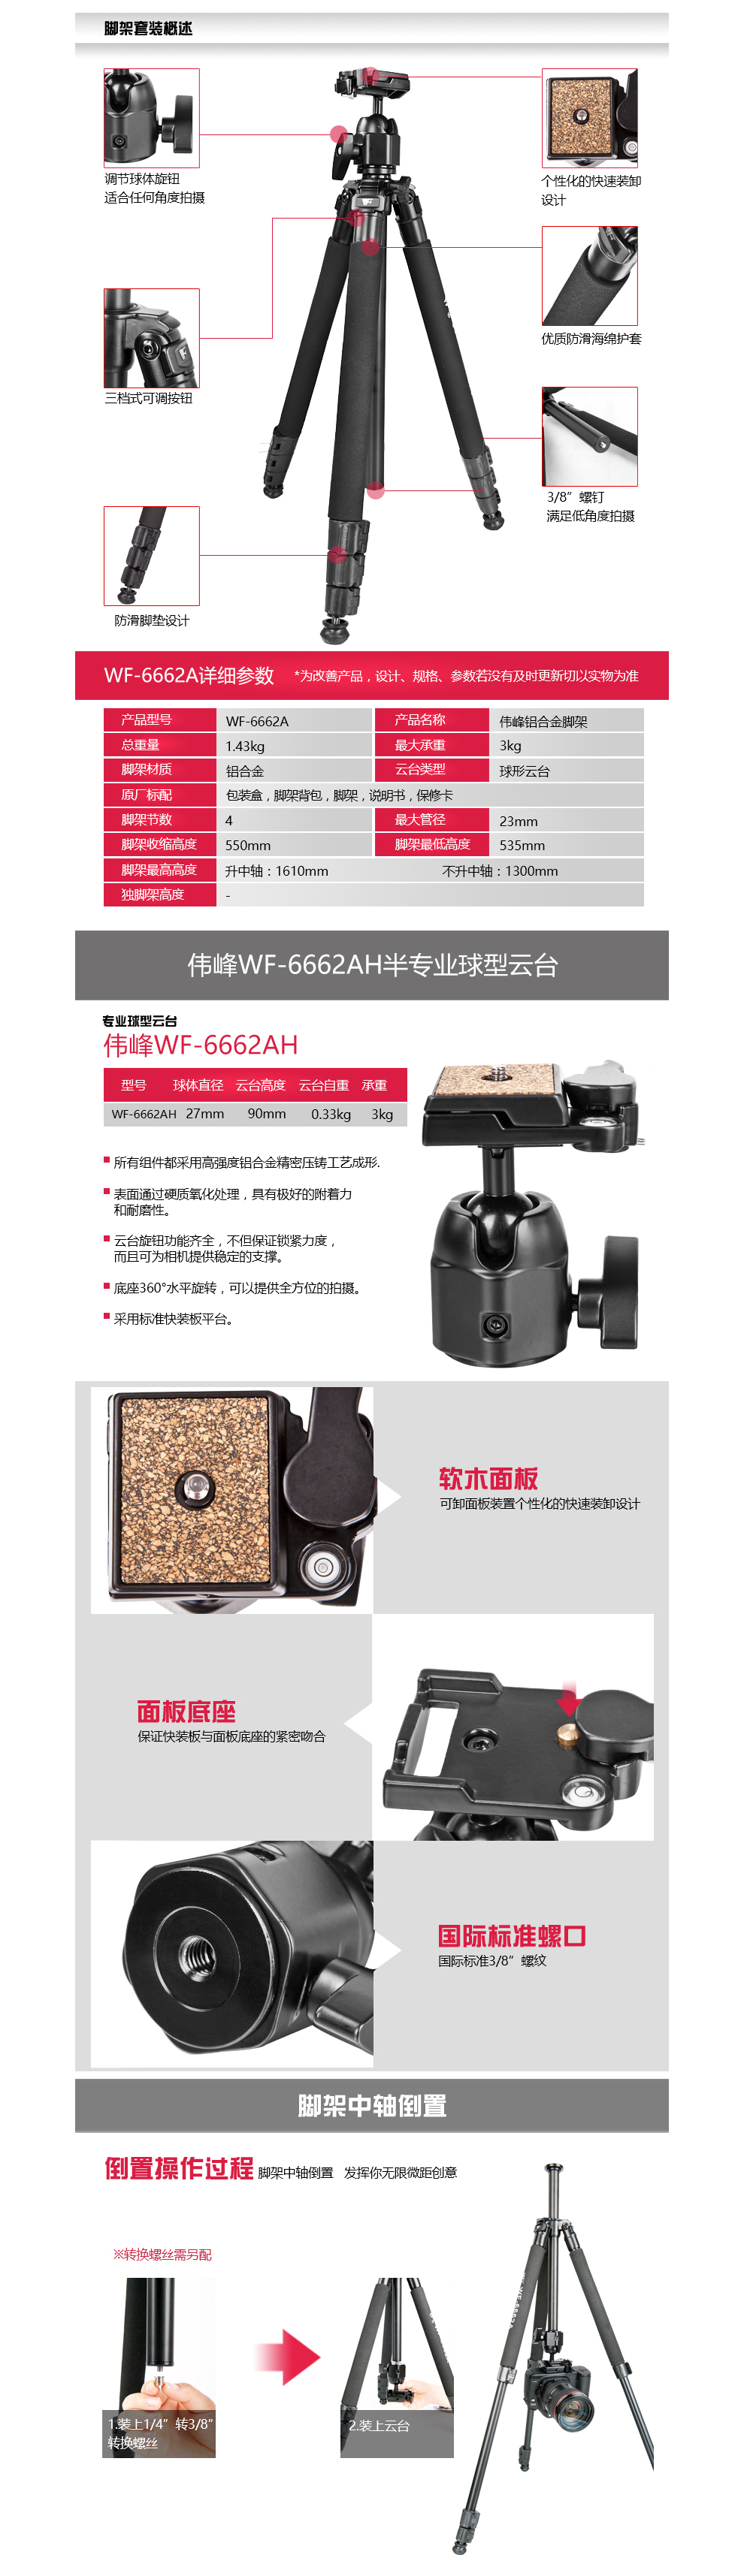 伟峰 WF-6662A铝合金专业三脚架 数码单反相机摄影脚架 旅游三角架手机